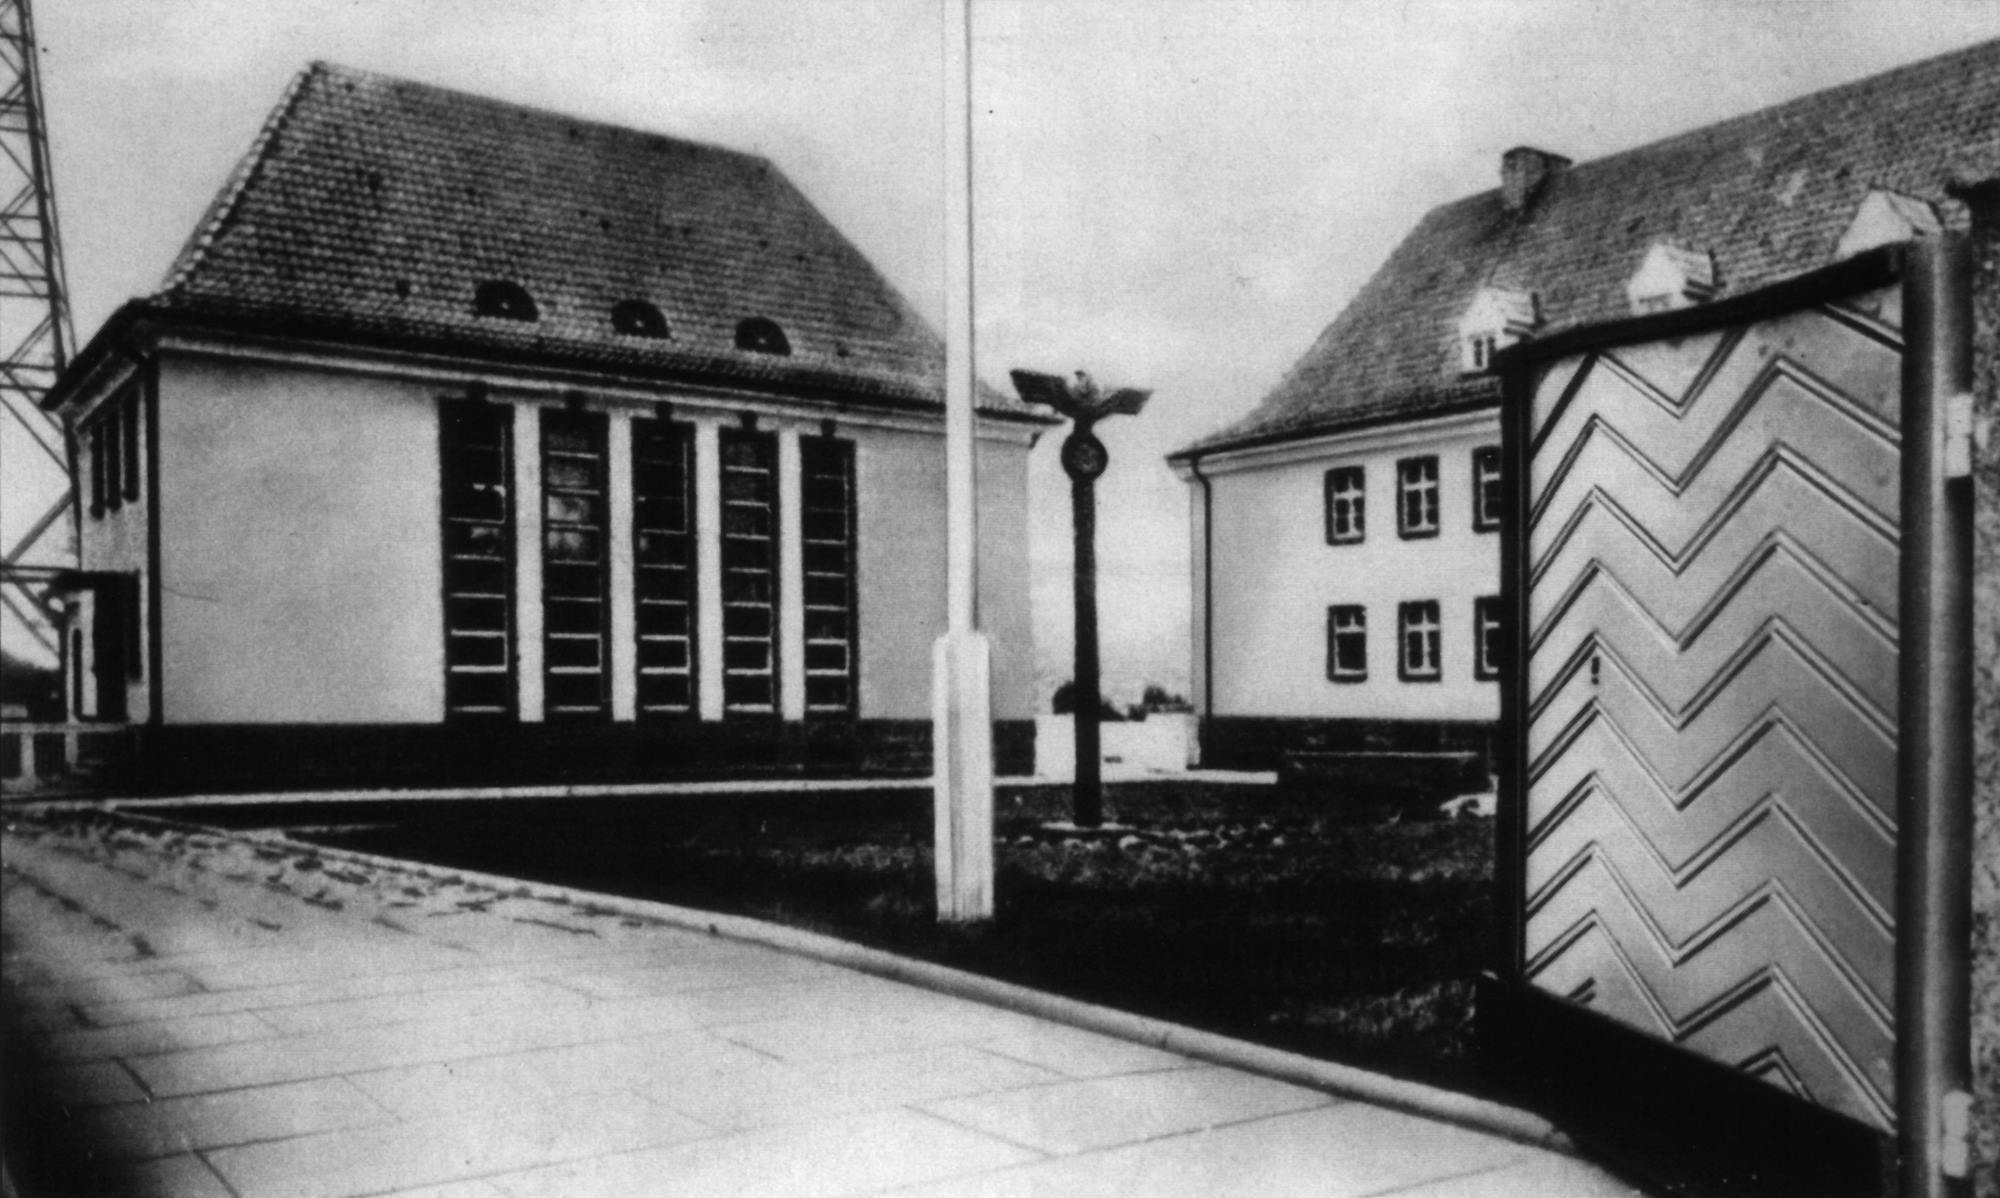 Budynki radiostacji gliwickiej, fotografia wykonana po 1935 roku. Ze zbiorów Muzeum w Gliwicach.